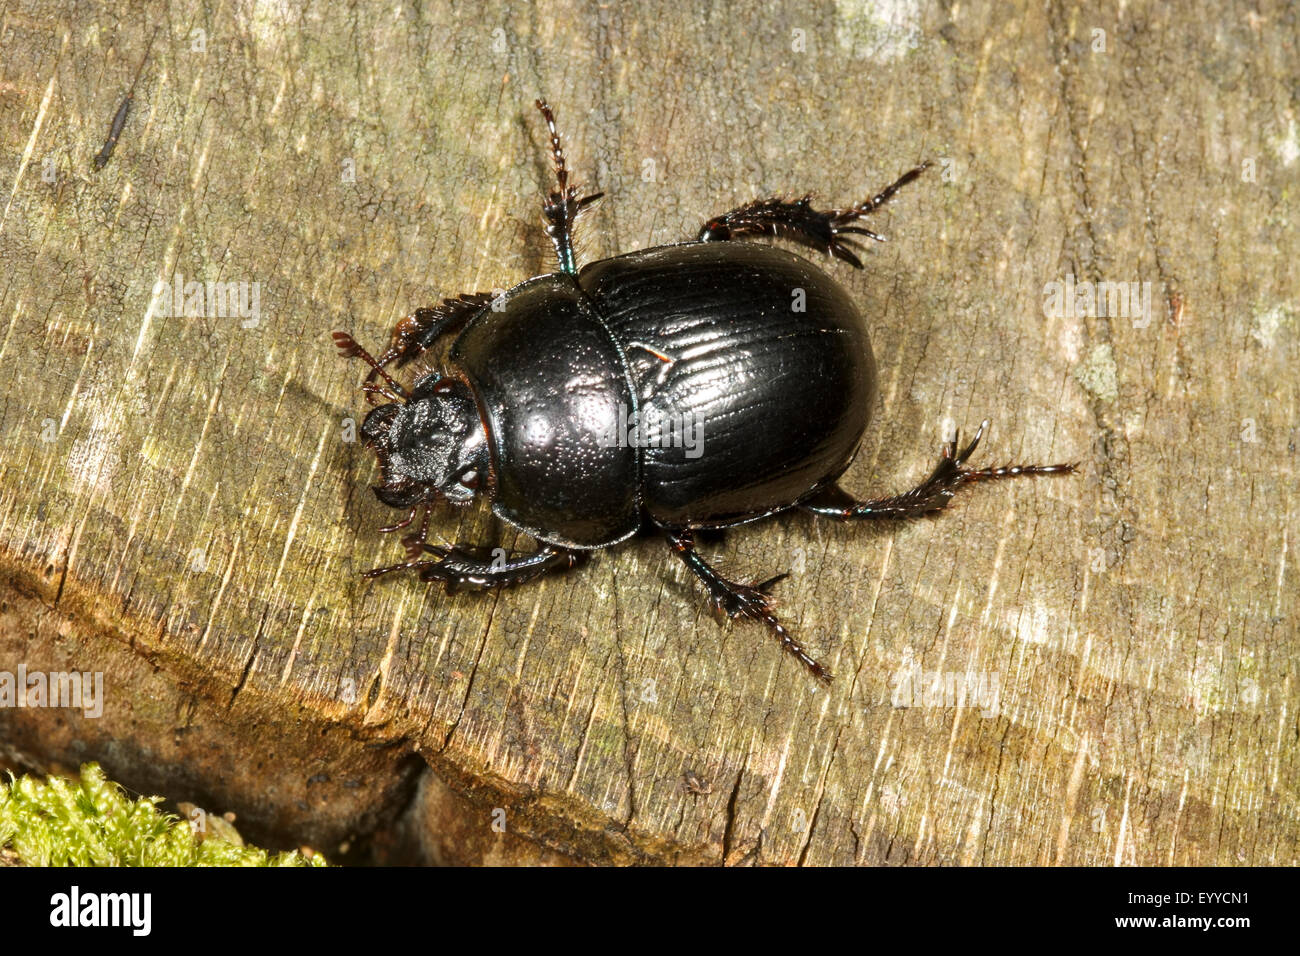 Common dor beetle (Anoplotrupes stercorosus, Geotrupes stercorosus), Common dor beetle on wood, Germany Stock Photo